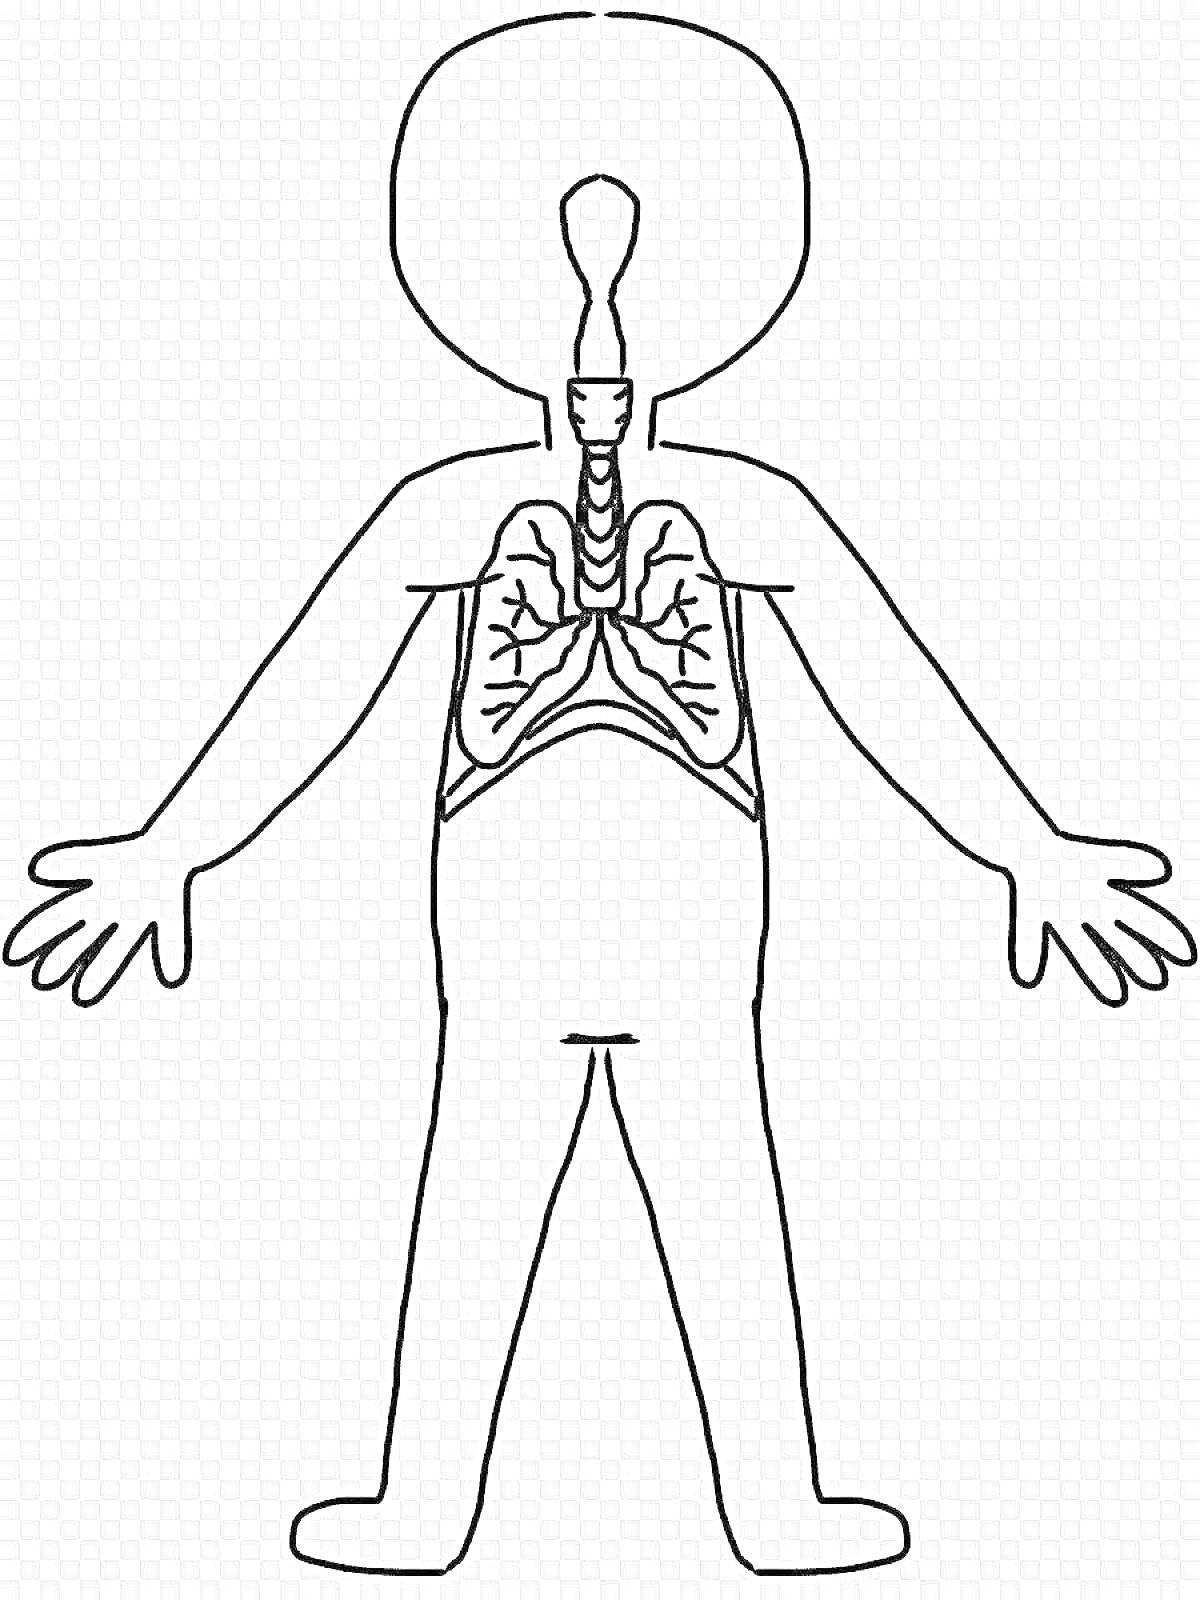 Человеческое тело с изображением трахеи и лёгких